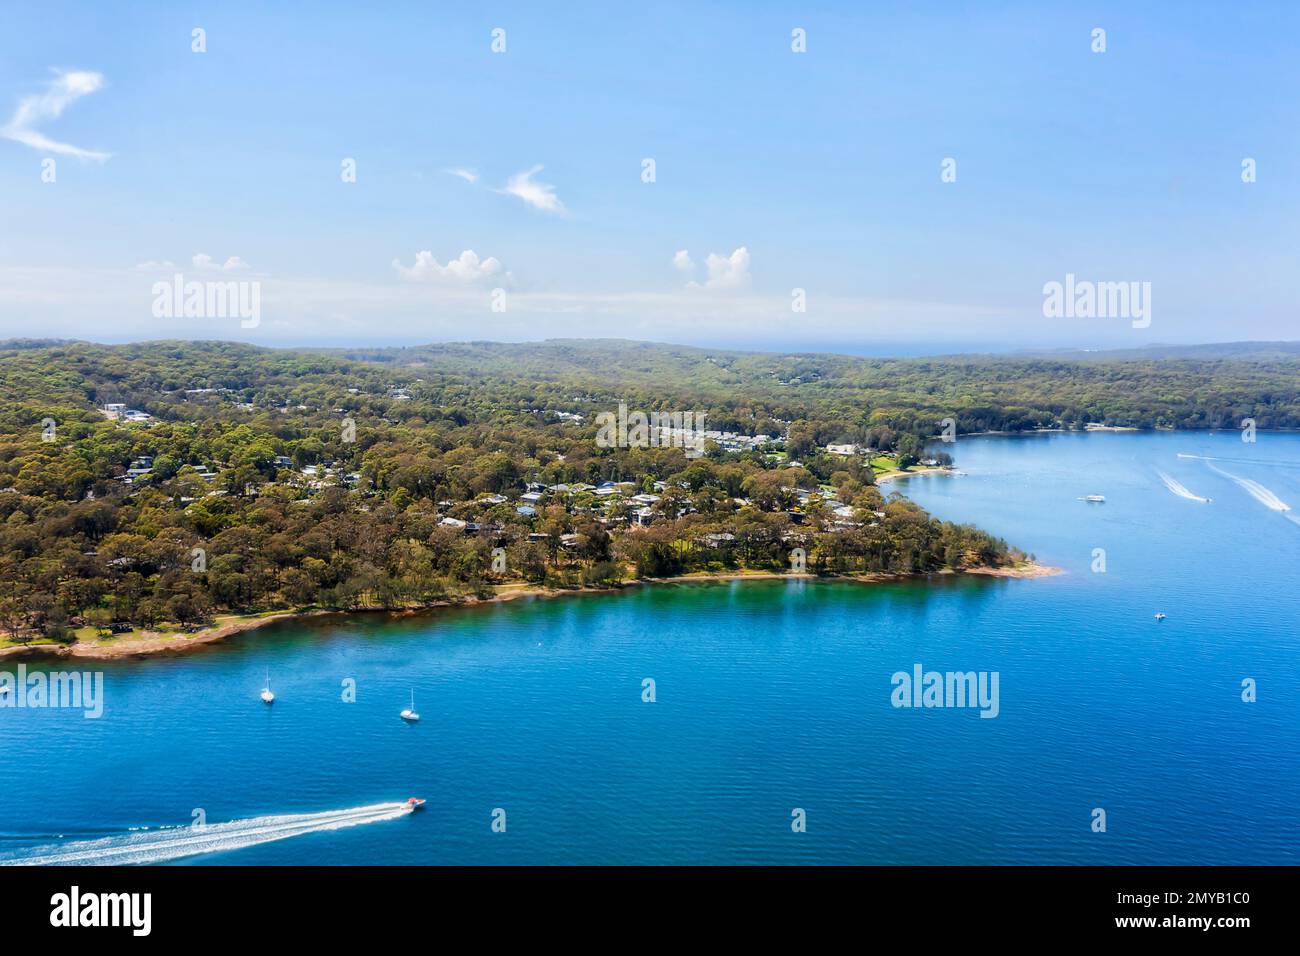 Lungomare sulla spiaggia di Murrays lungolago località costiera sul lago Macquarie in Australia - paesaggio panoramico aereo. Foto Stock